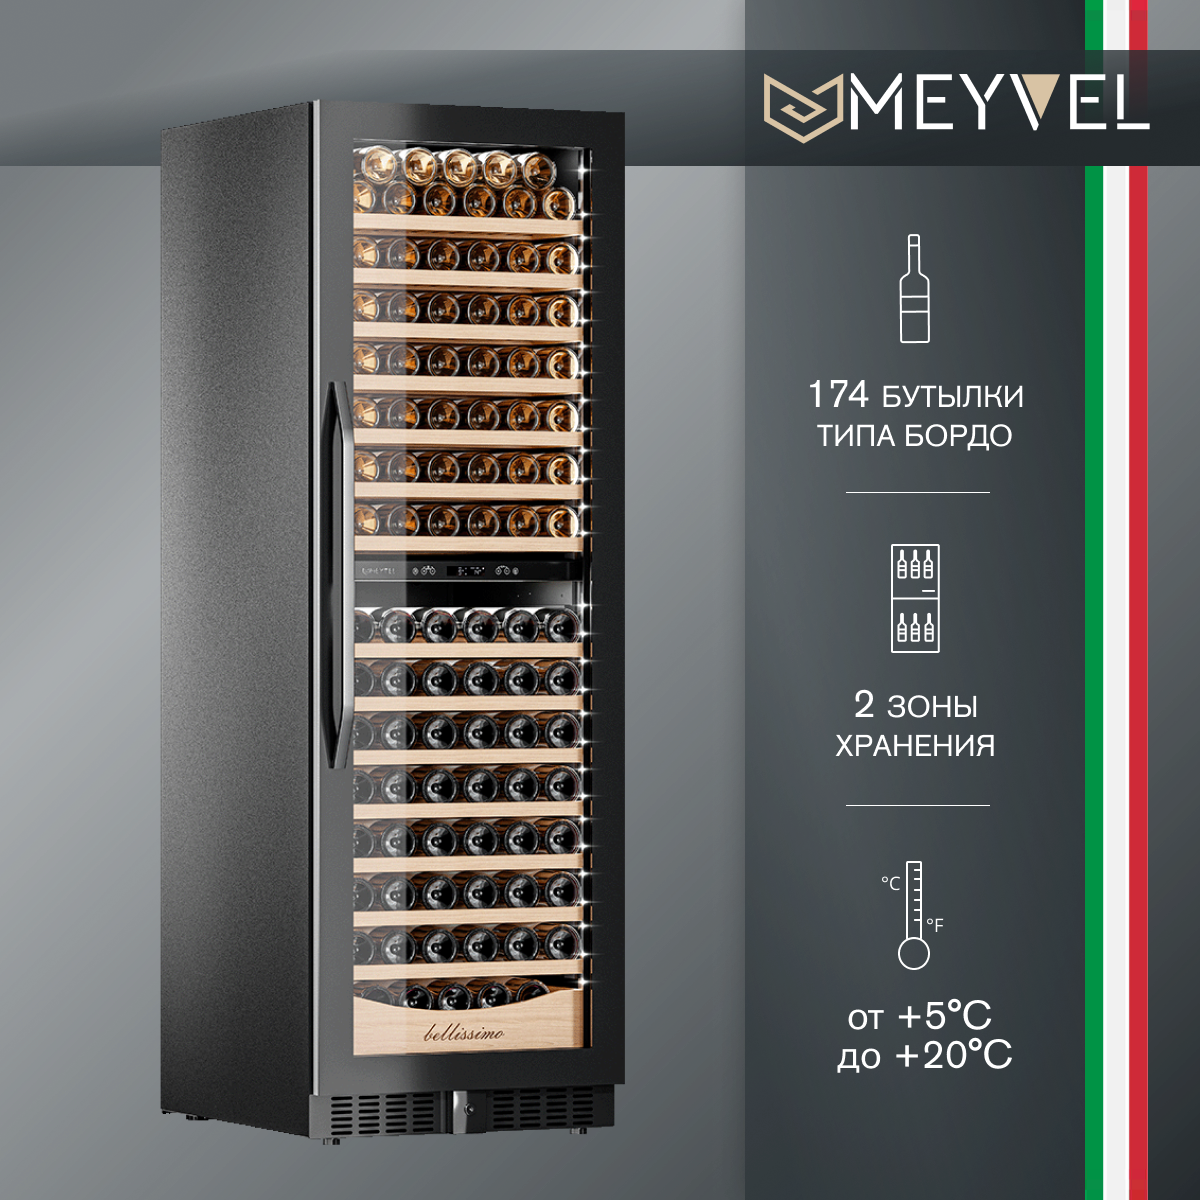 Винный холодильный шкаф Meyvel MV163PRO-KBT2 компрессорный (встраиваемый / отдельностоящий холодильник для вина на 163 бутылки)